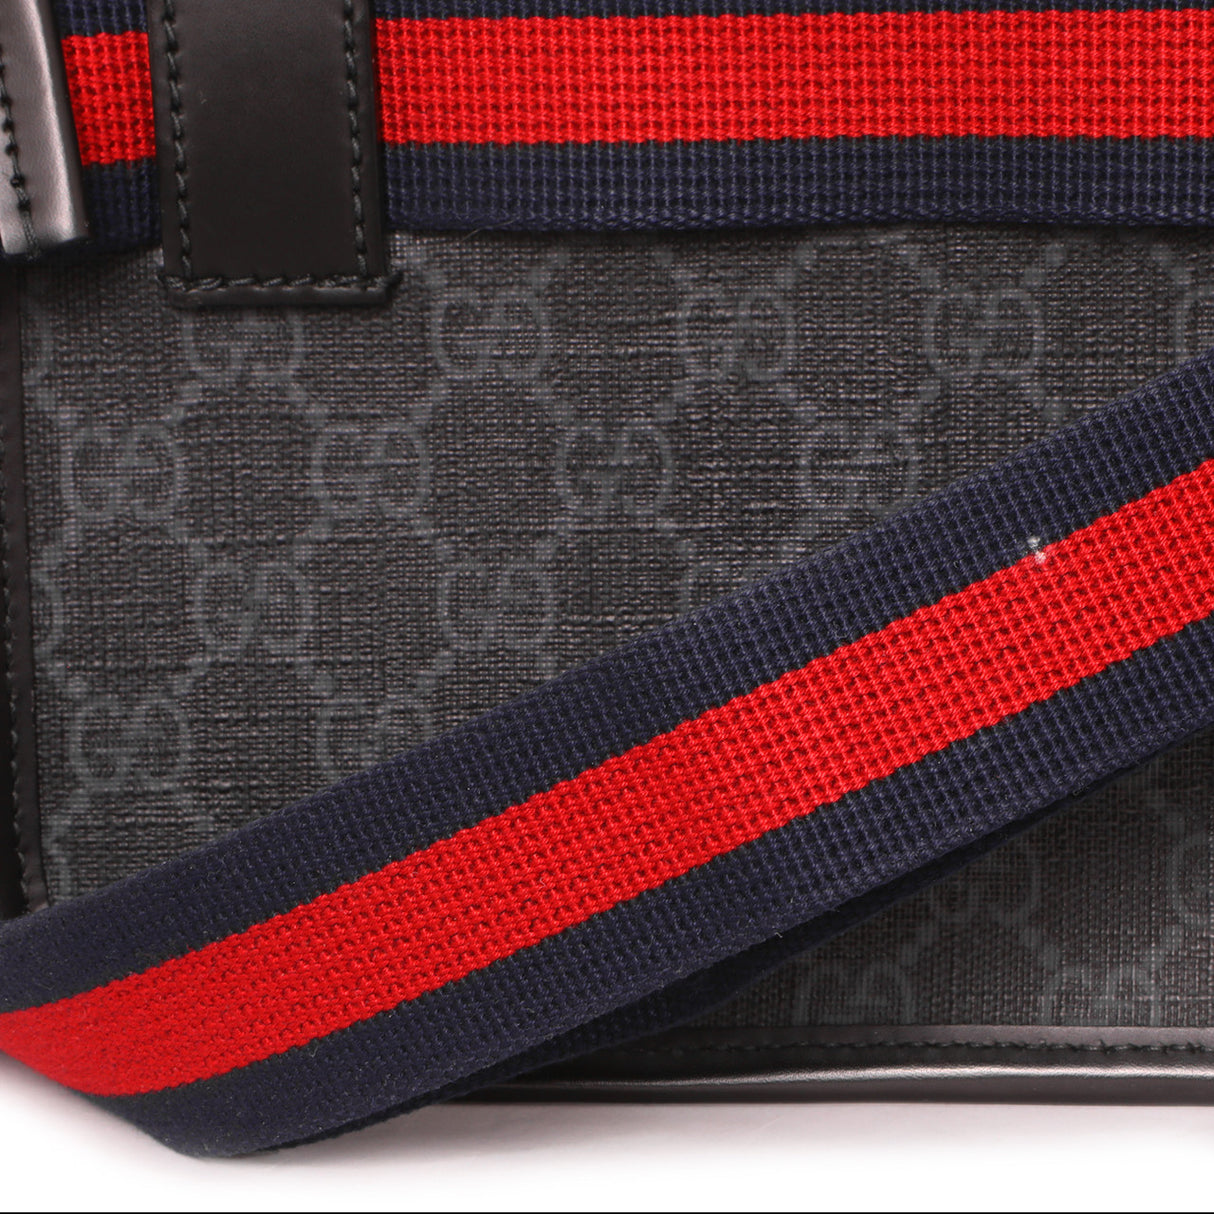 Gucci Black GG Supreme Monogram Belt Bag